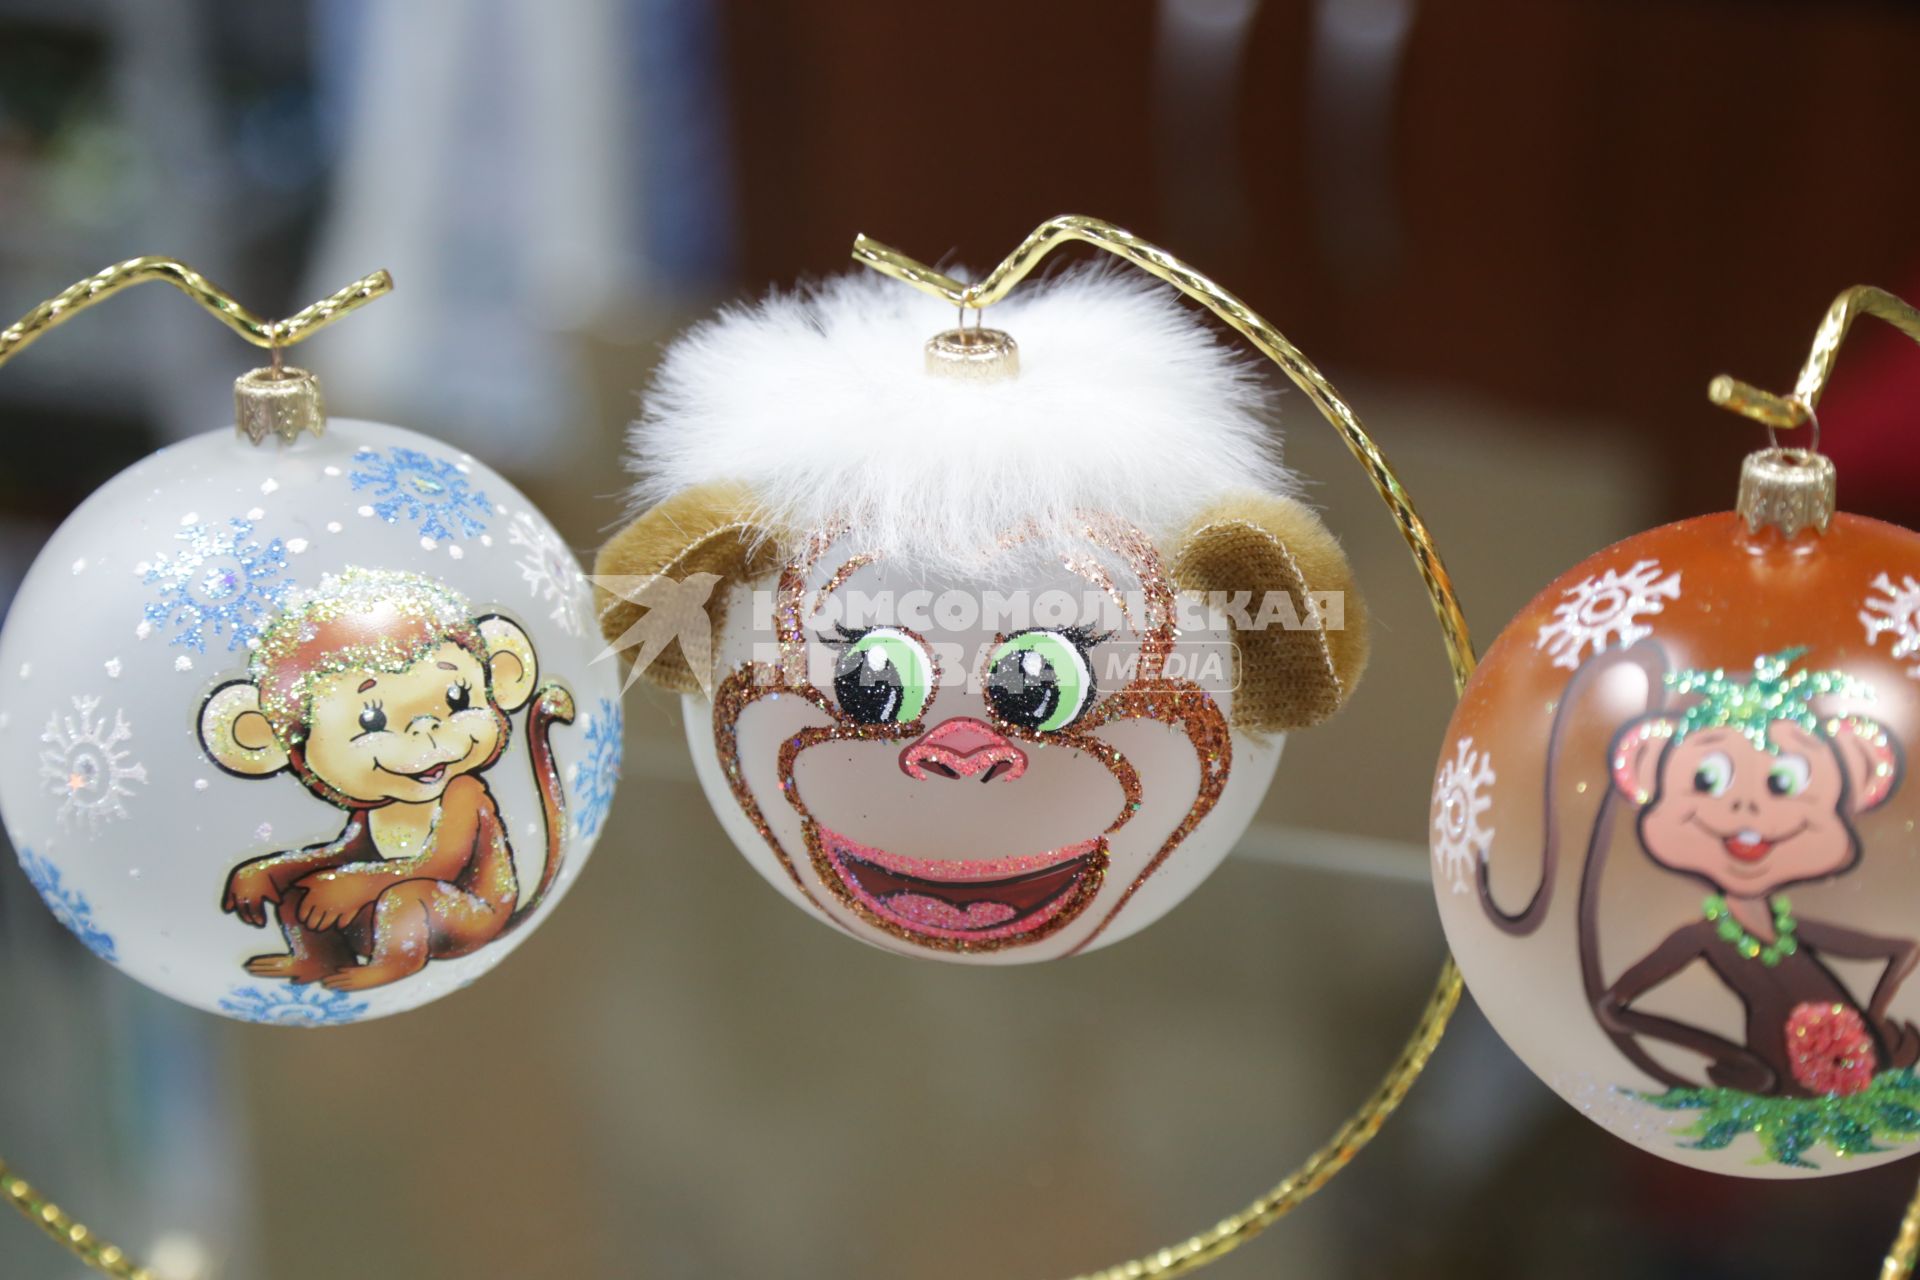 Красноярск. Продажа елочных игрушек с символом Нового 2016 года - обезьяной.